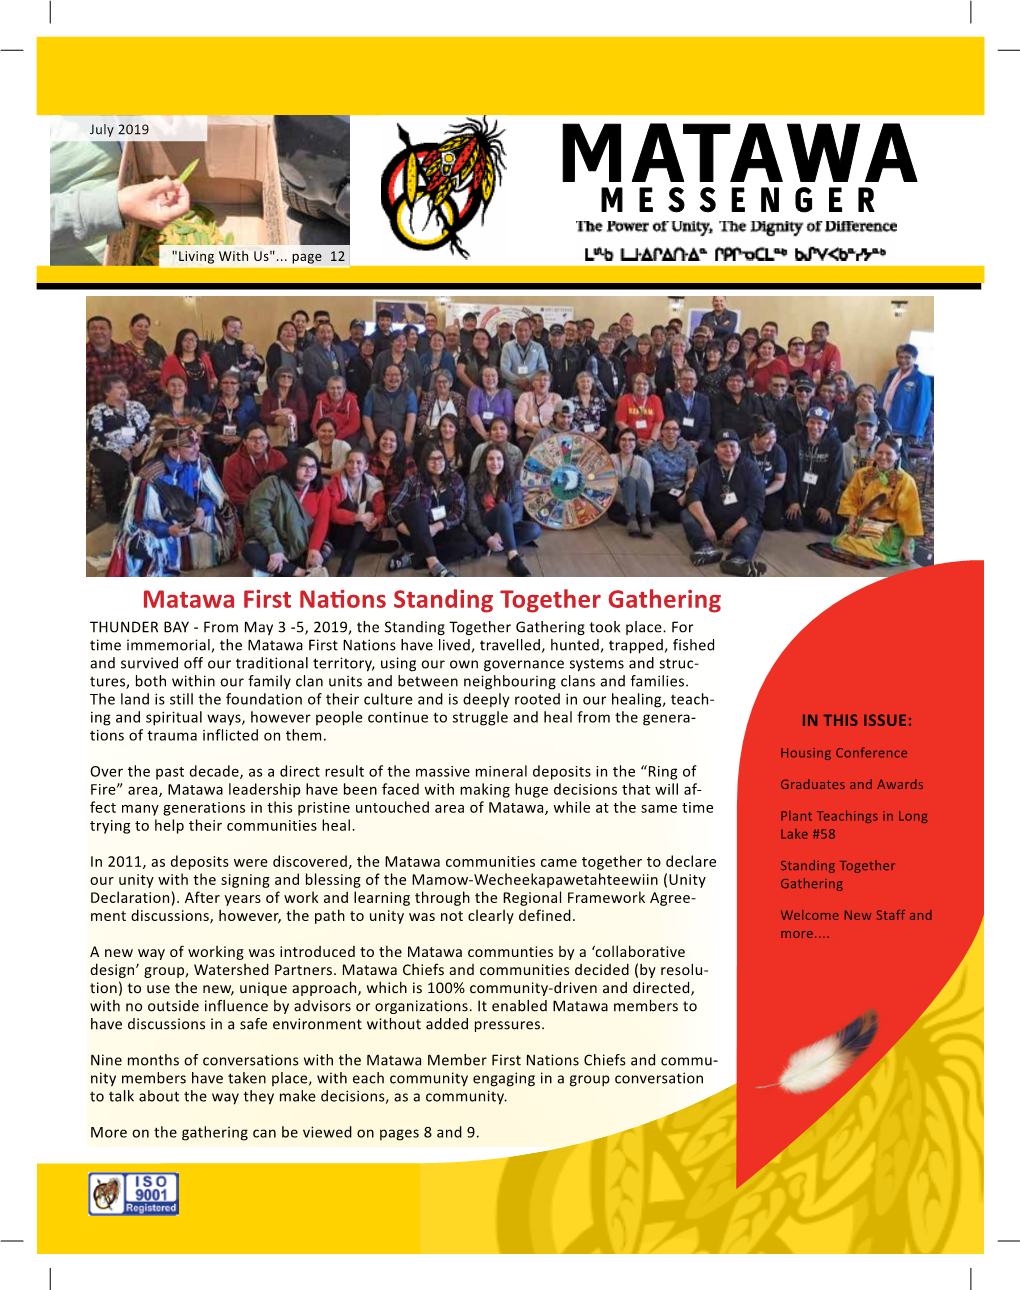 July 2019 MATAWA MESSENGER